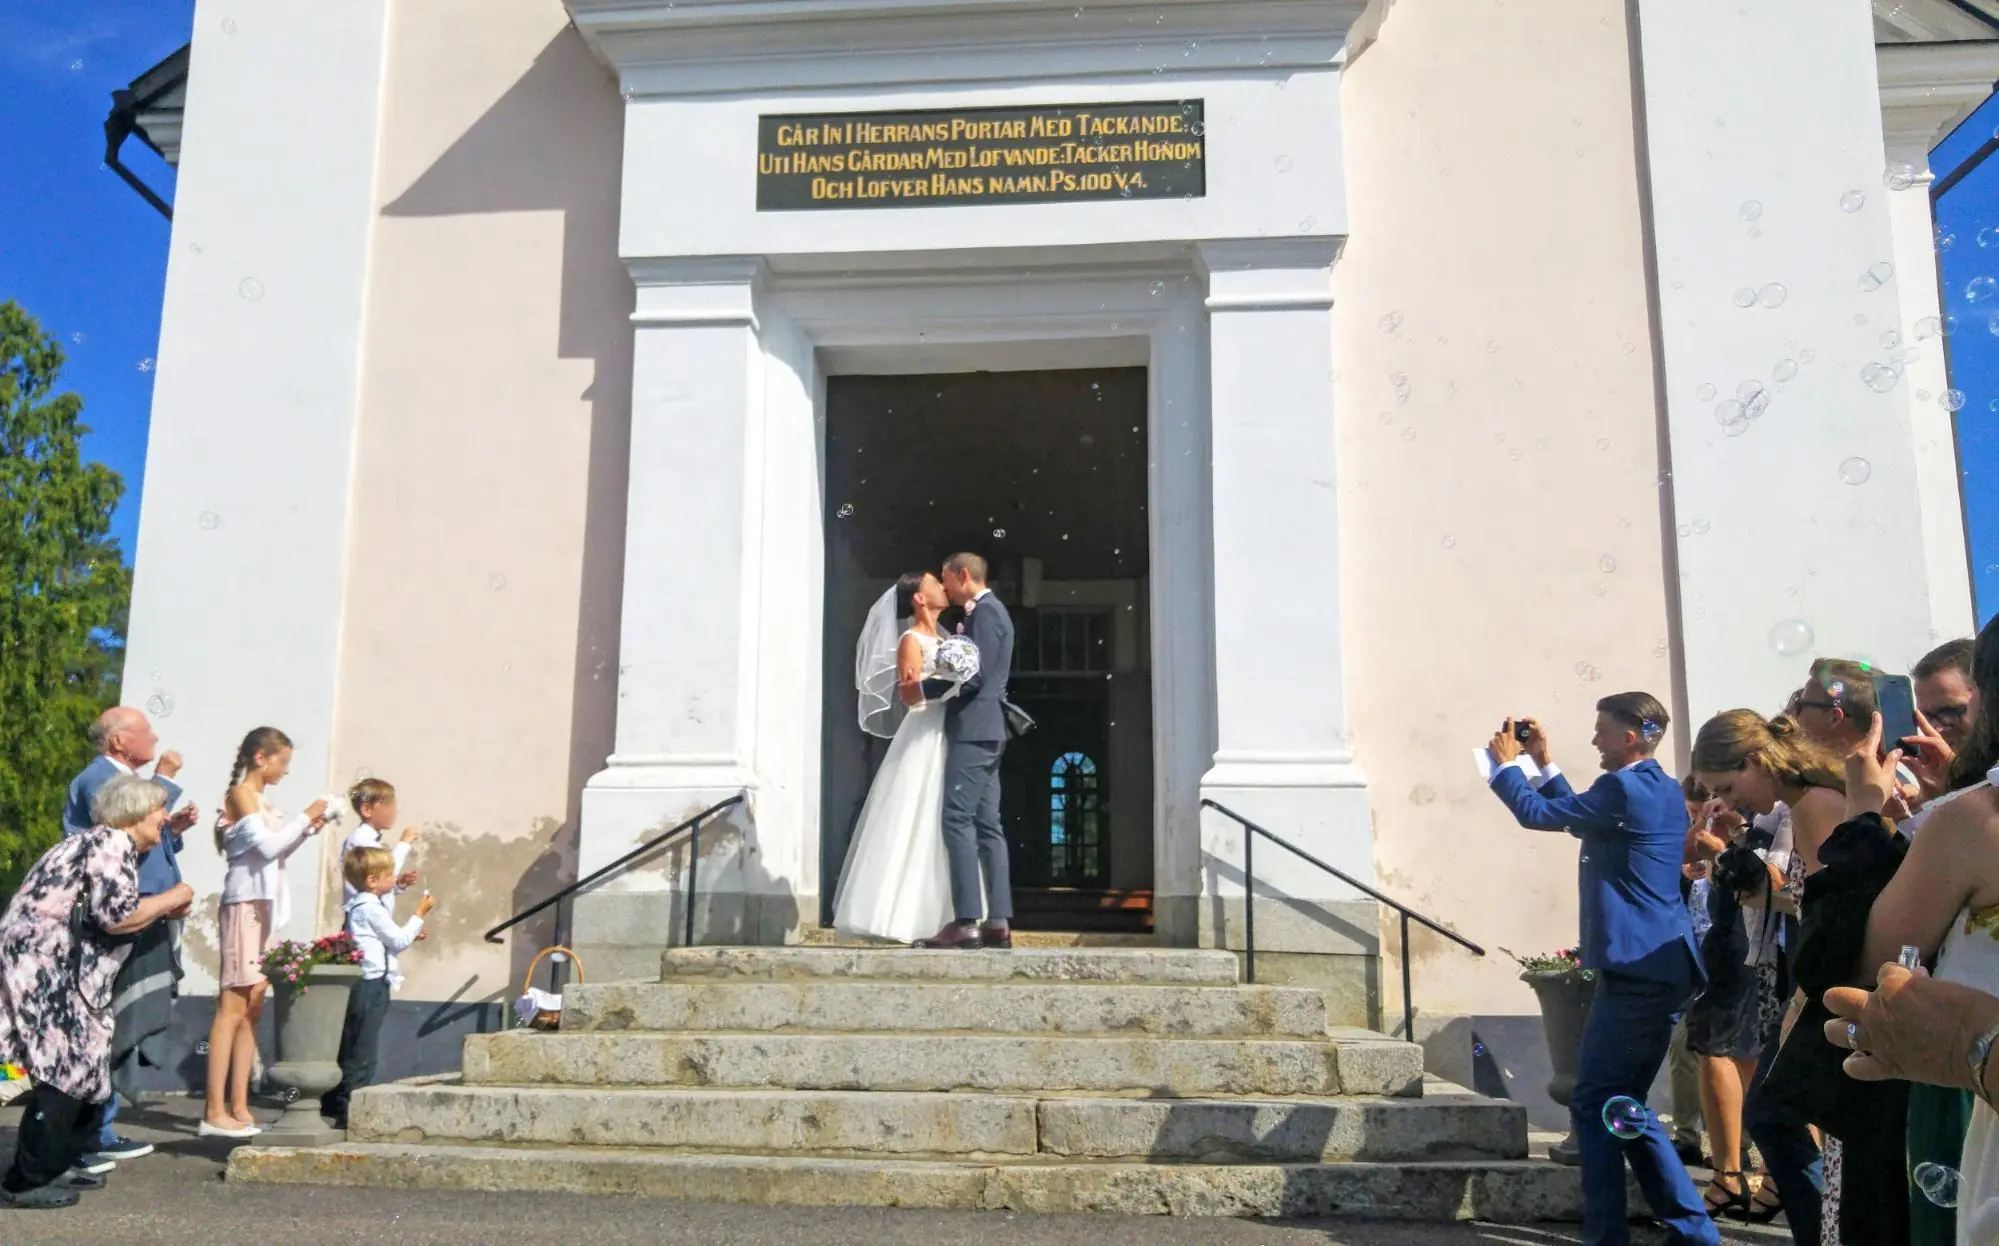 【スウェーデンの暮らし】同棲婚。スウェーデンのサンボ制度と、小さな教会の結婚式